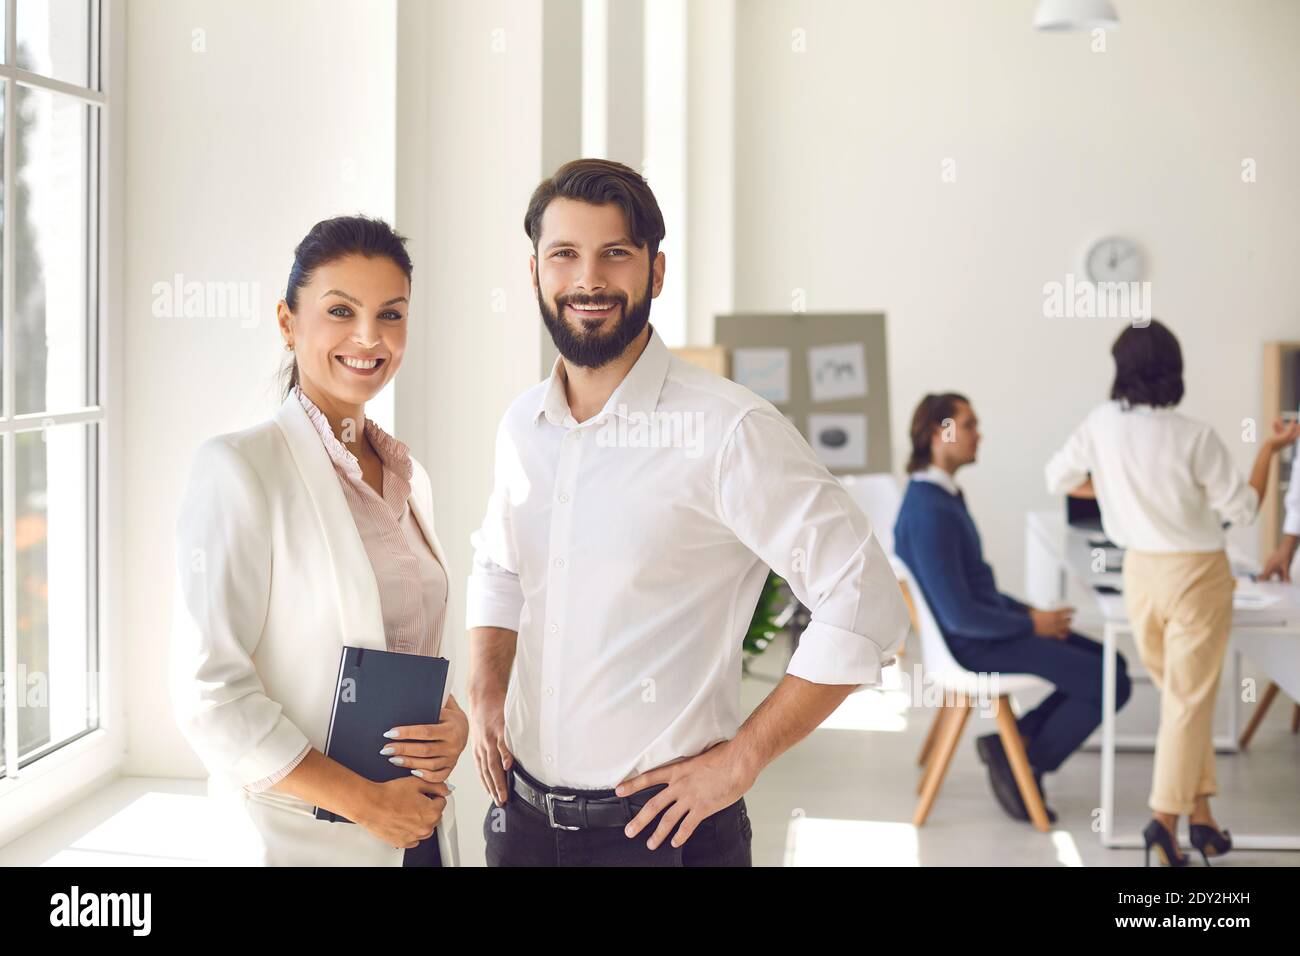 Porträt einer selbstbewussten Frau und eines Mannes, die vor dem Hintergrund der Arbeiter in der Bürohalle stehen. Stockfoto